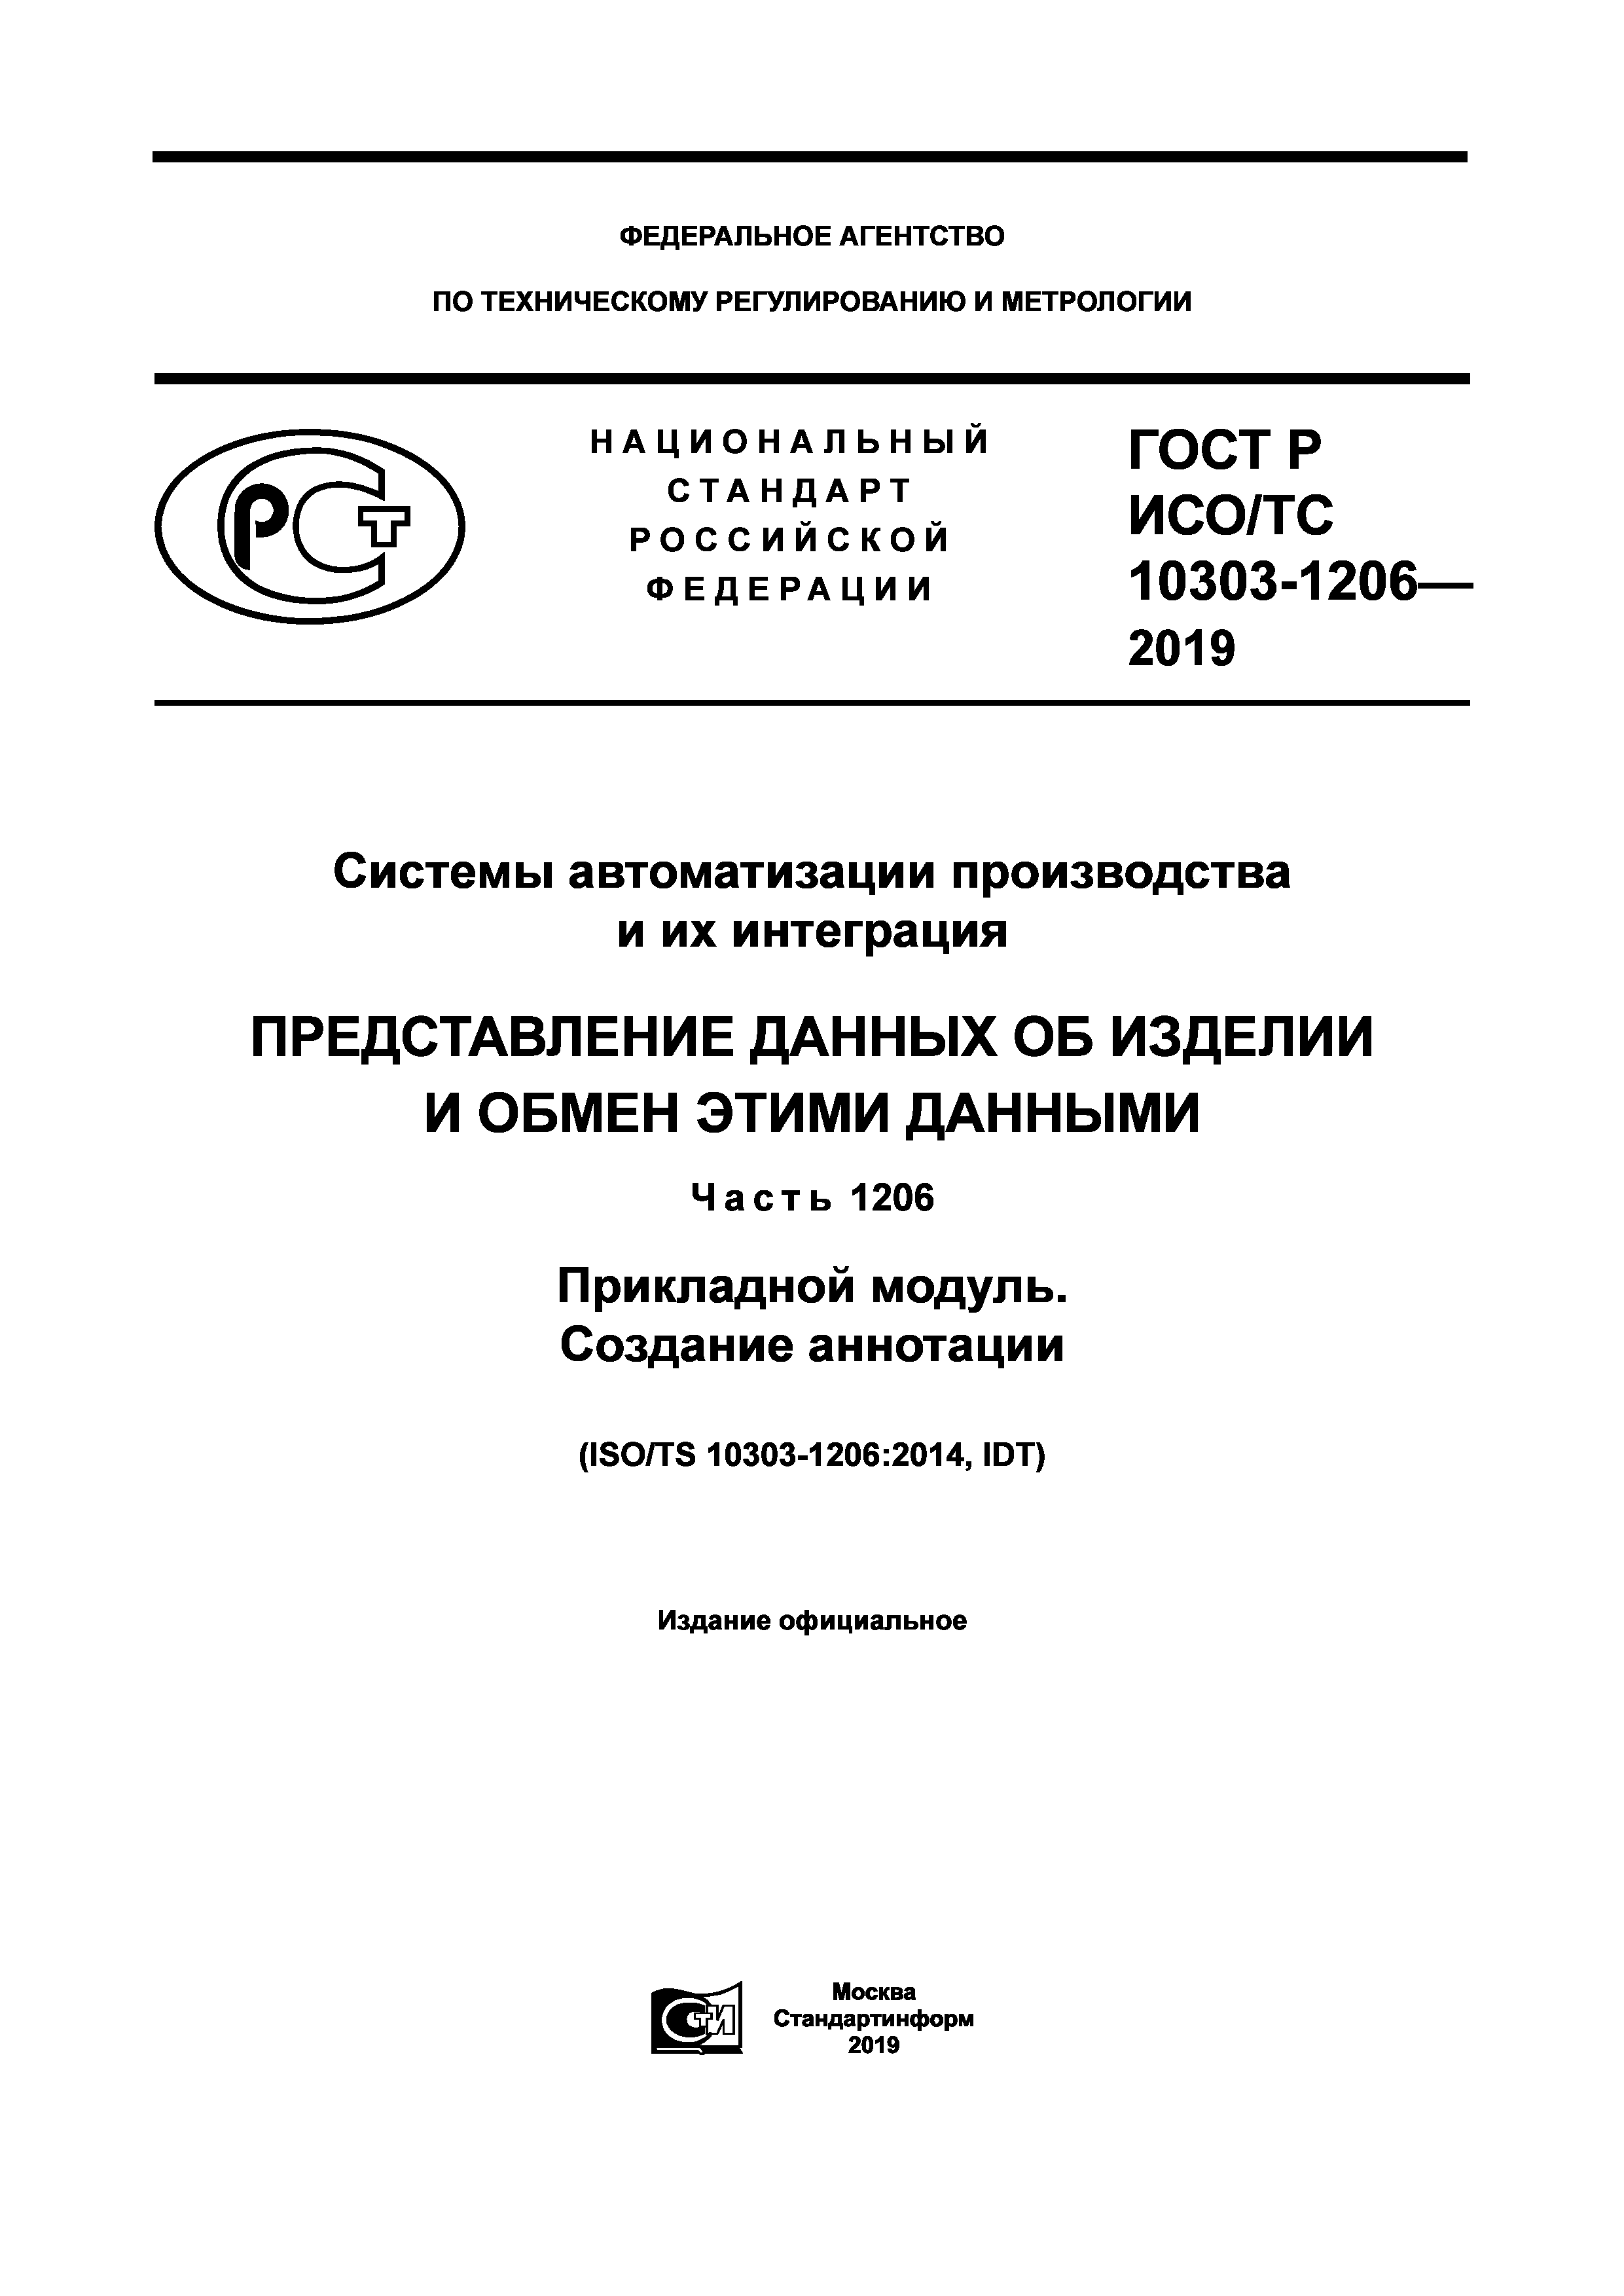 ГОСТ Р ИСО/ТС 10303-1206-2019